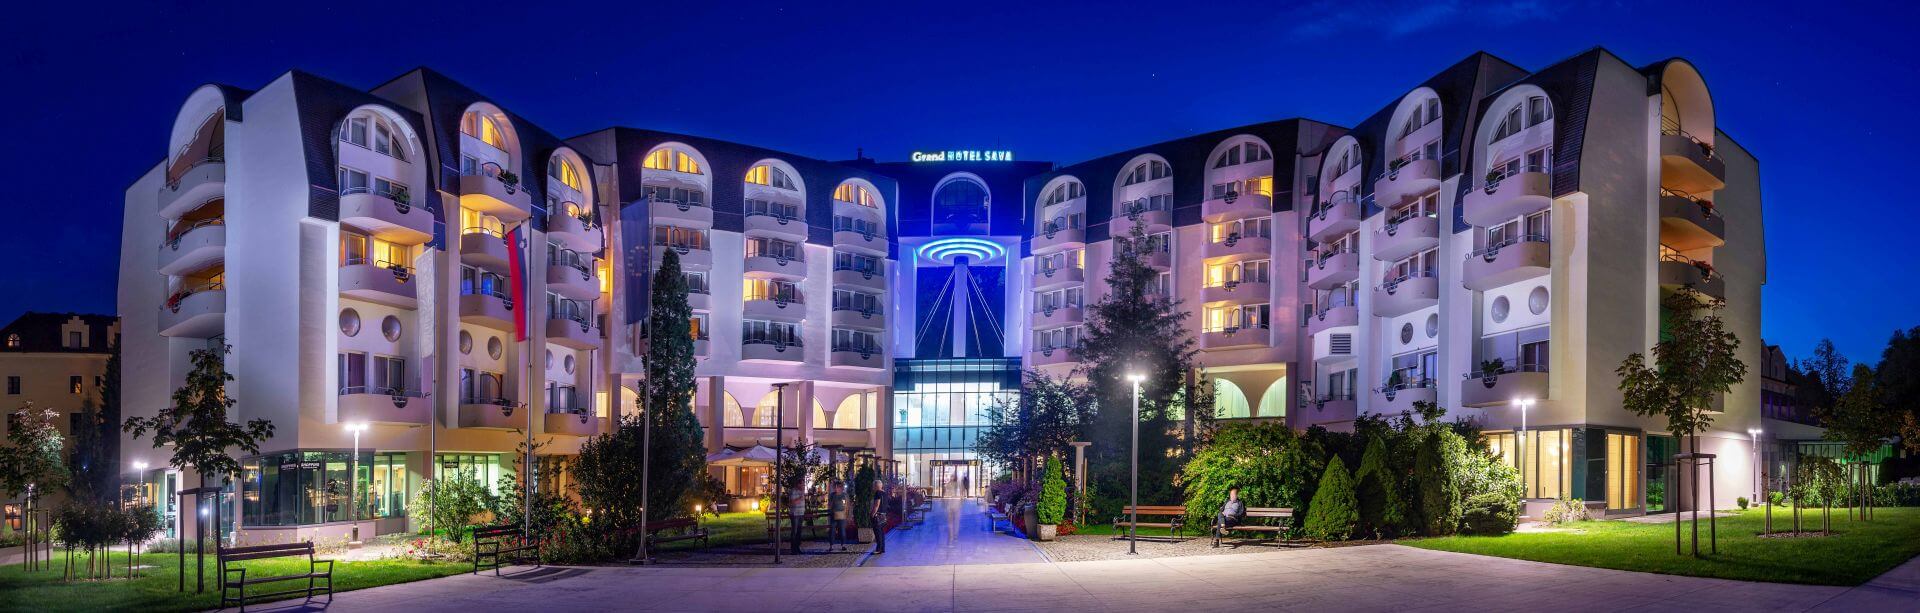 Grand Hotel Sava Sup 